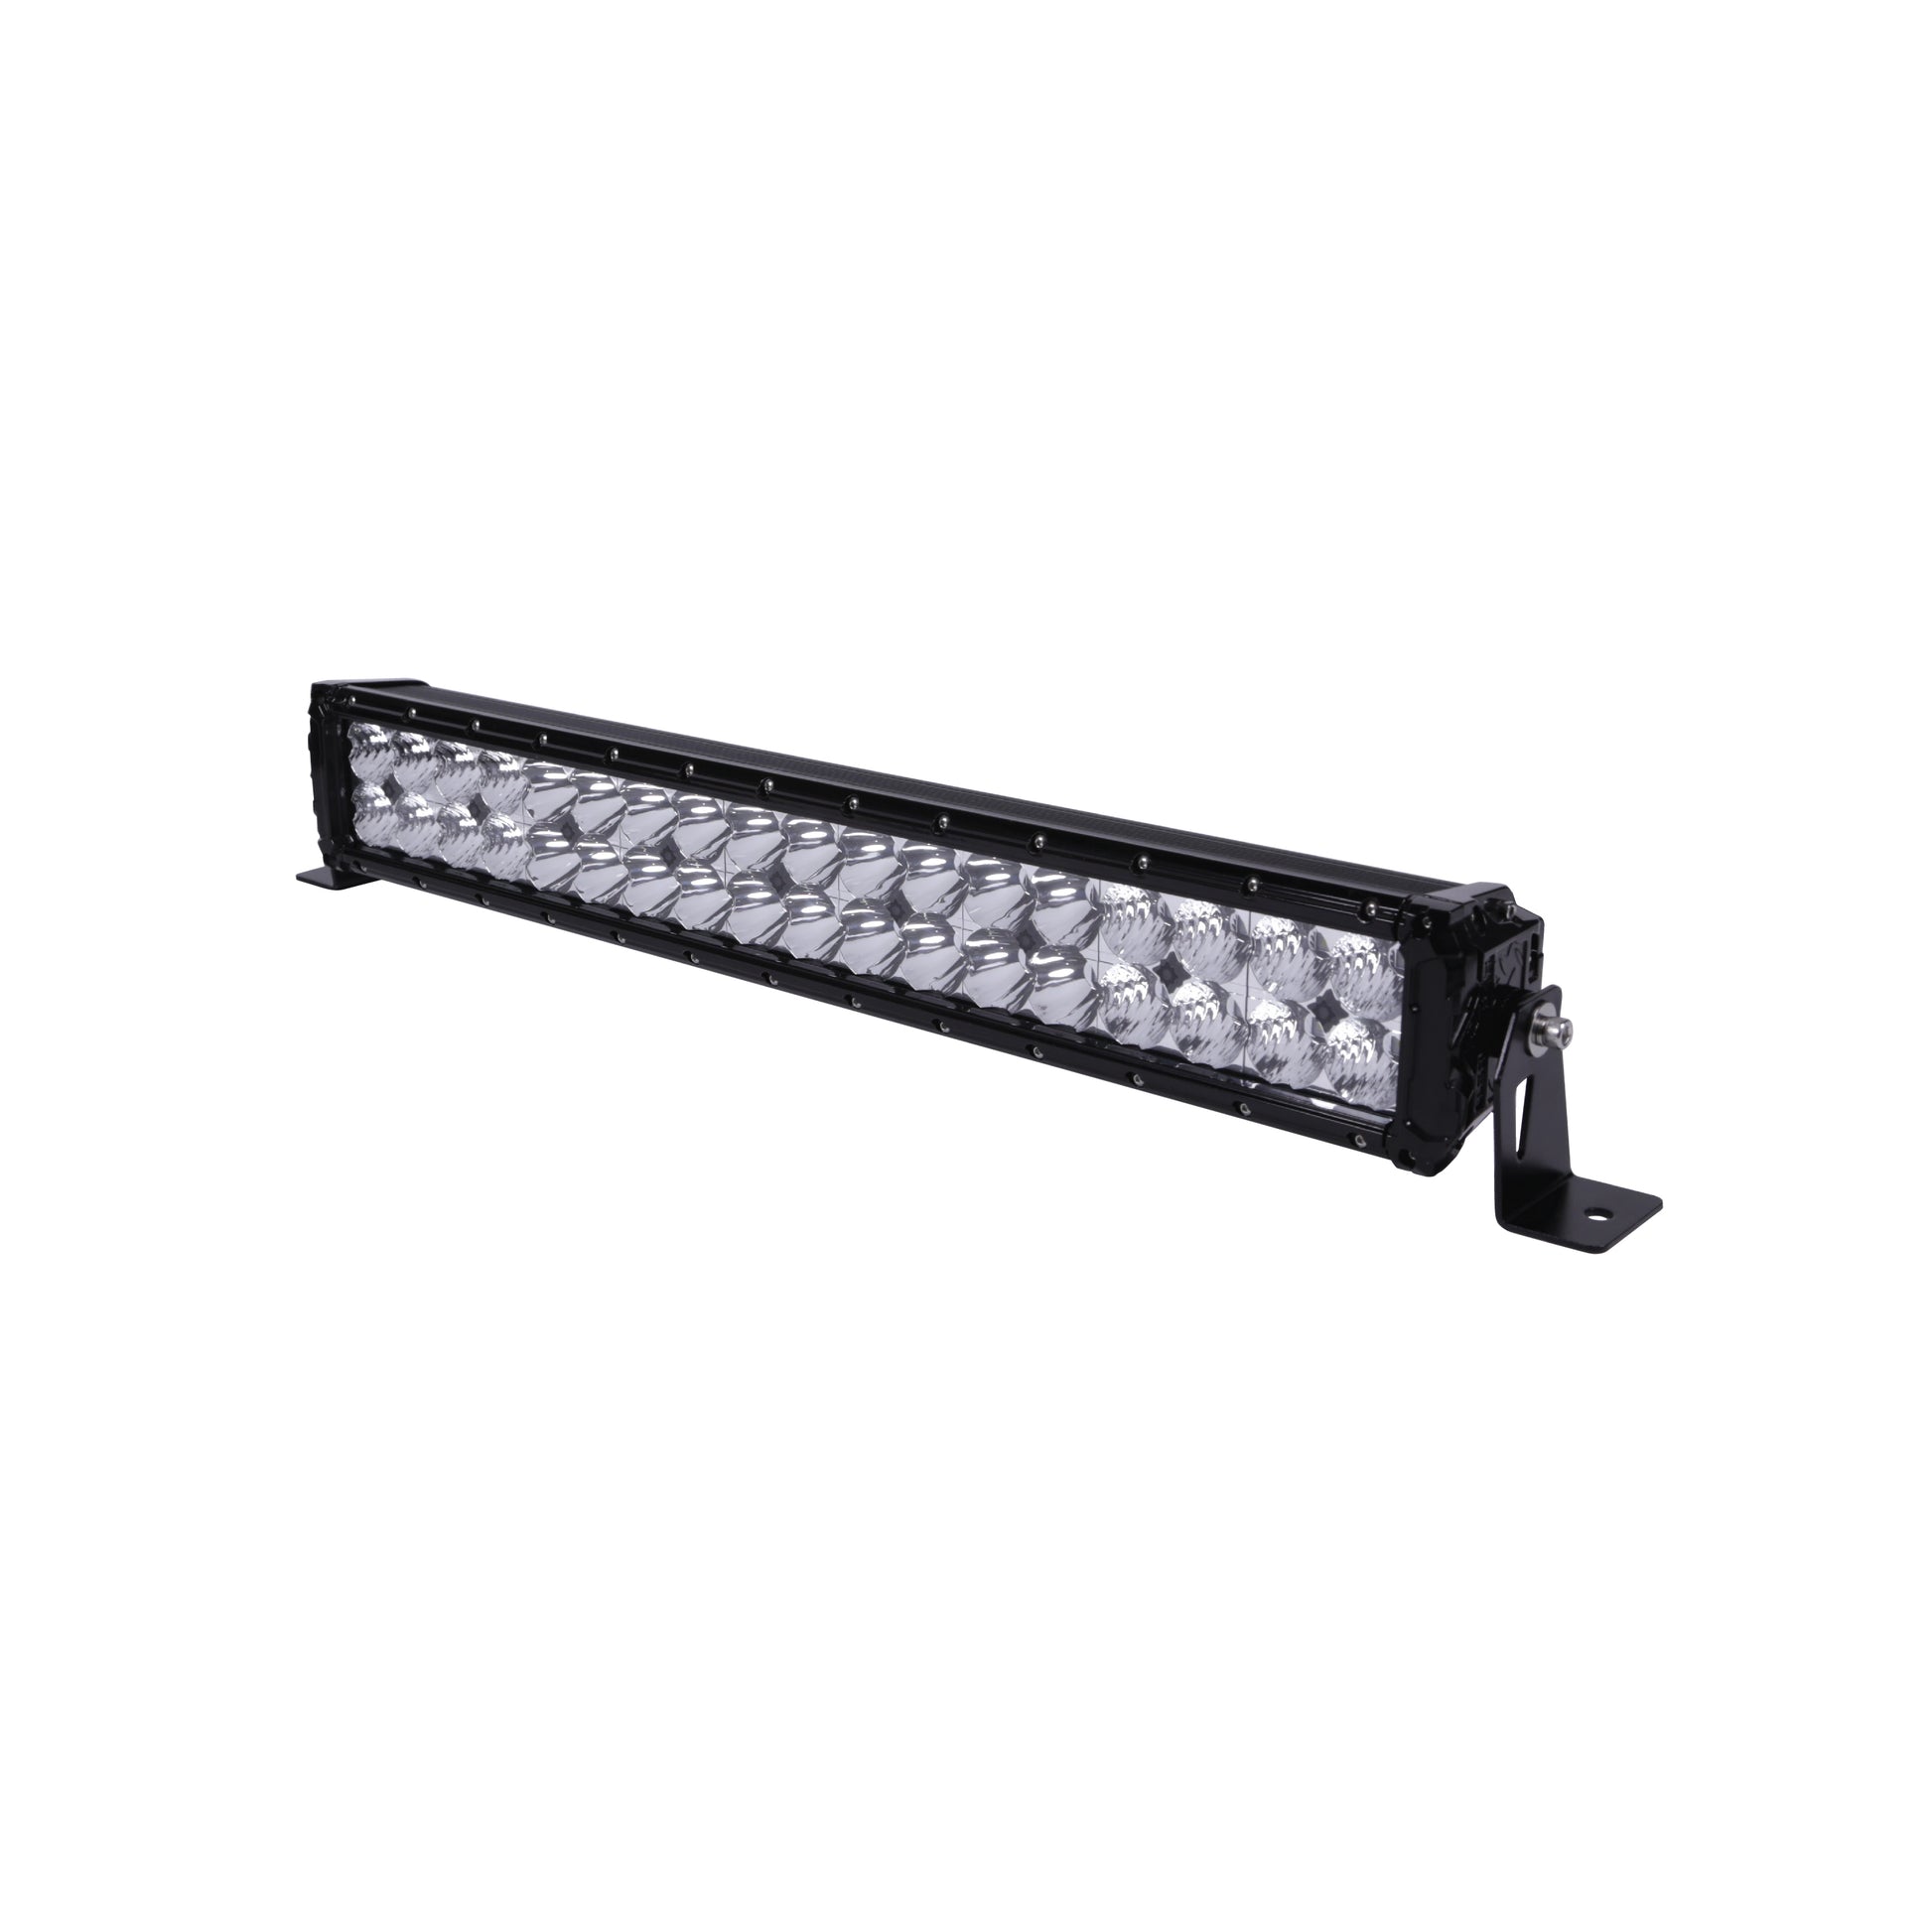 27 Dual Row LED Light Bar with Hybrid Beam Technology